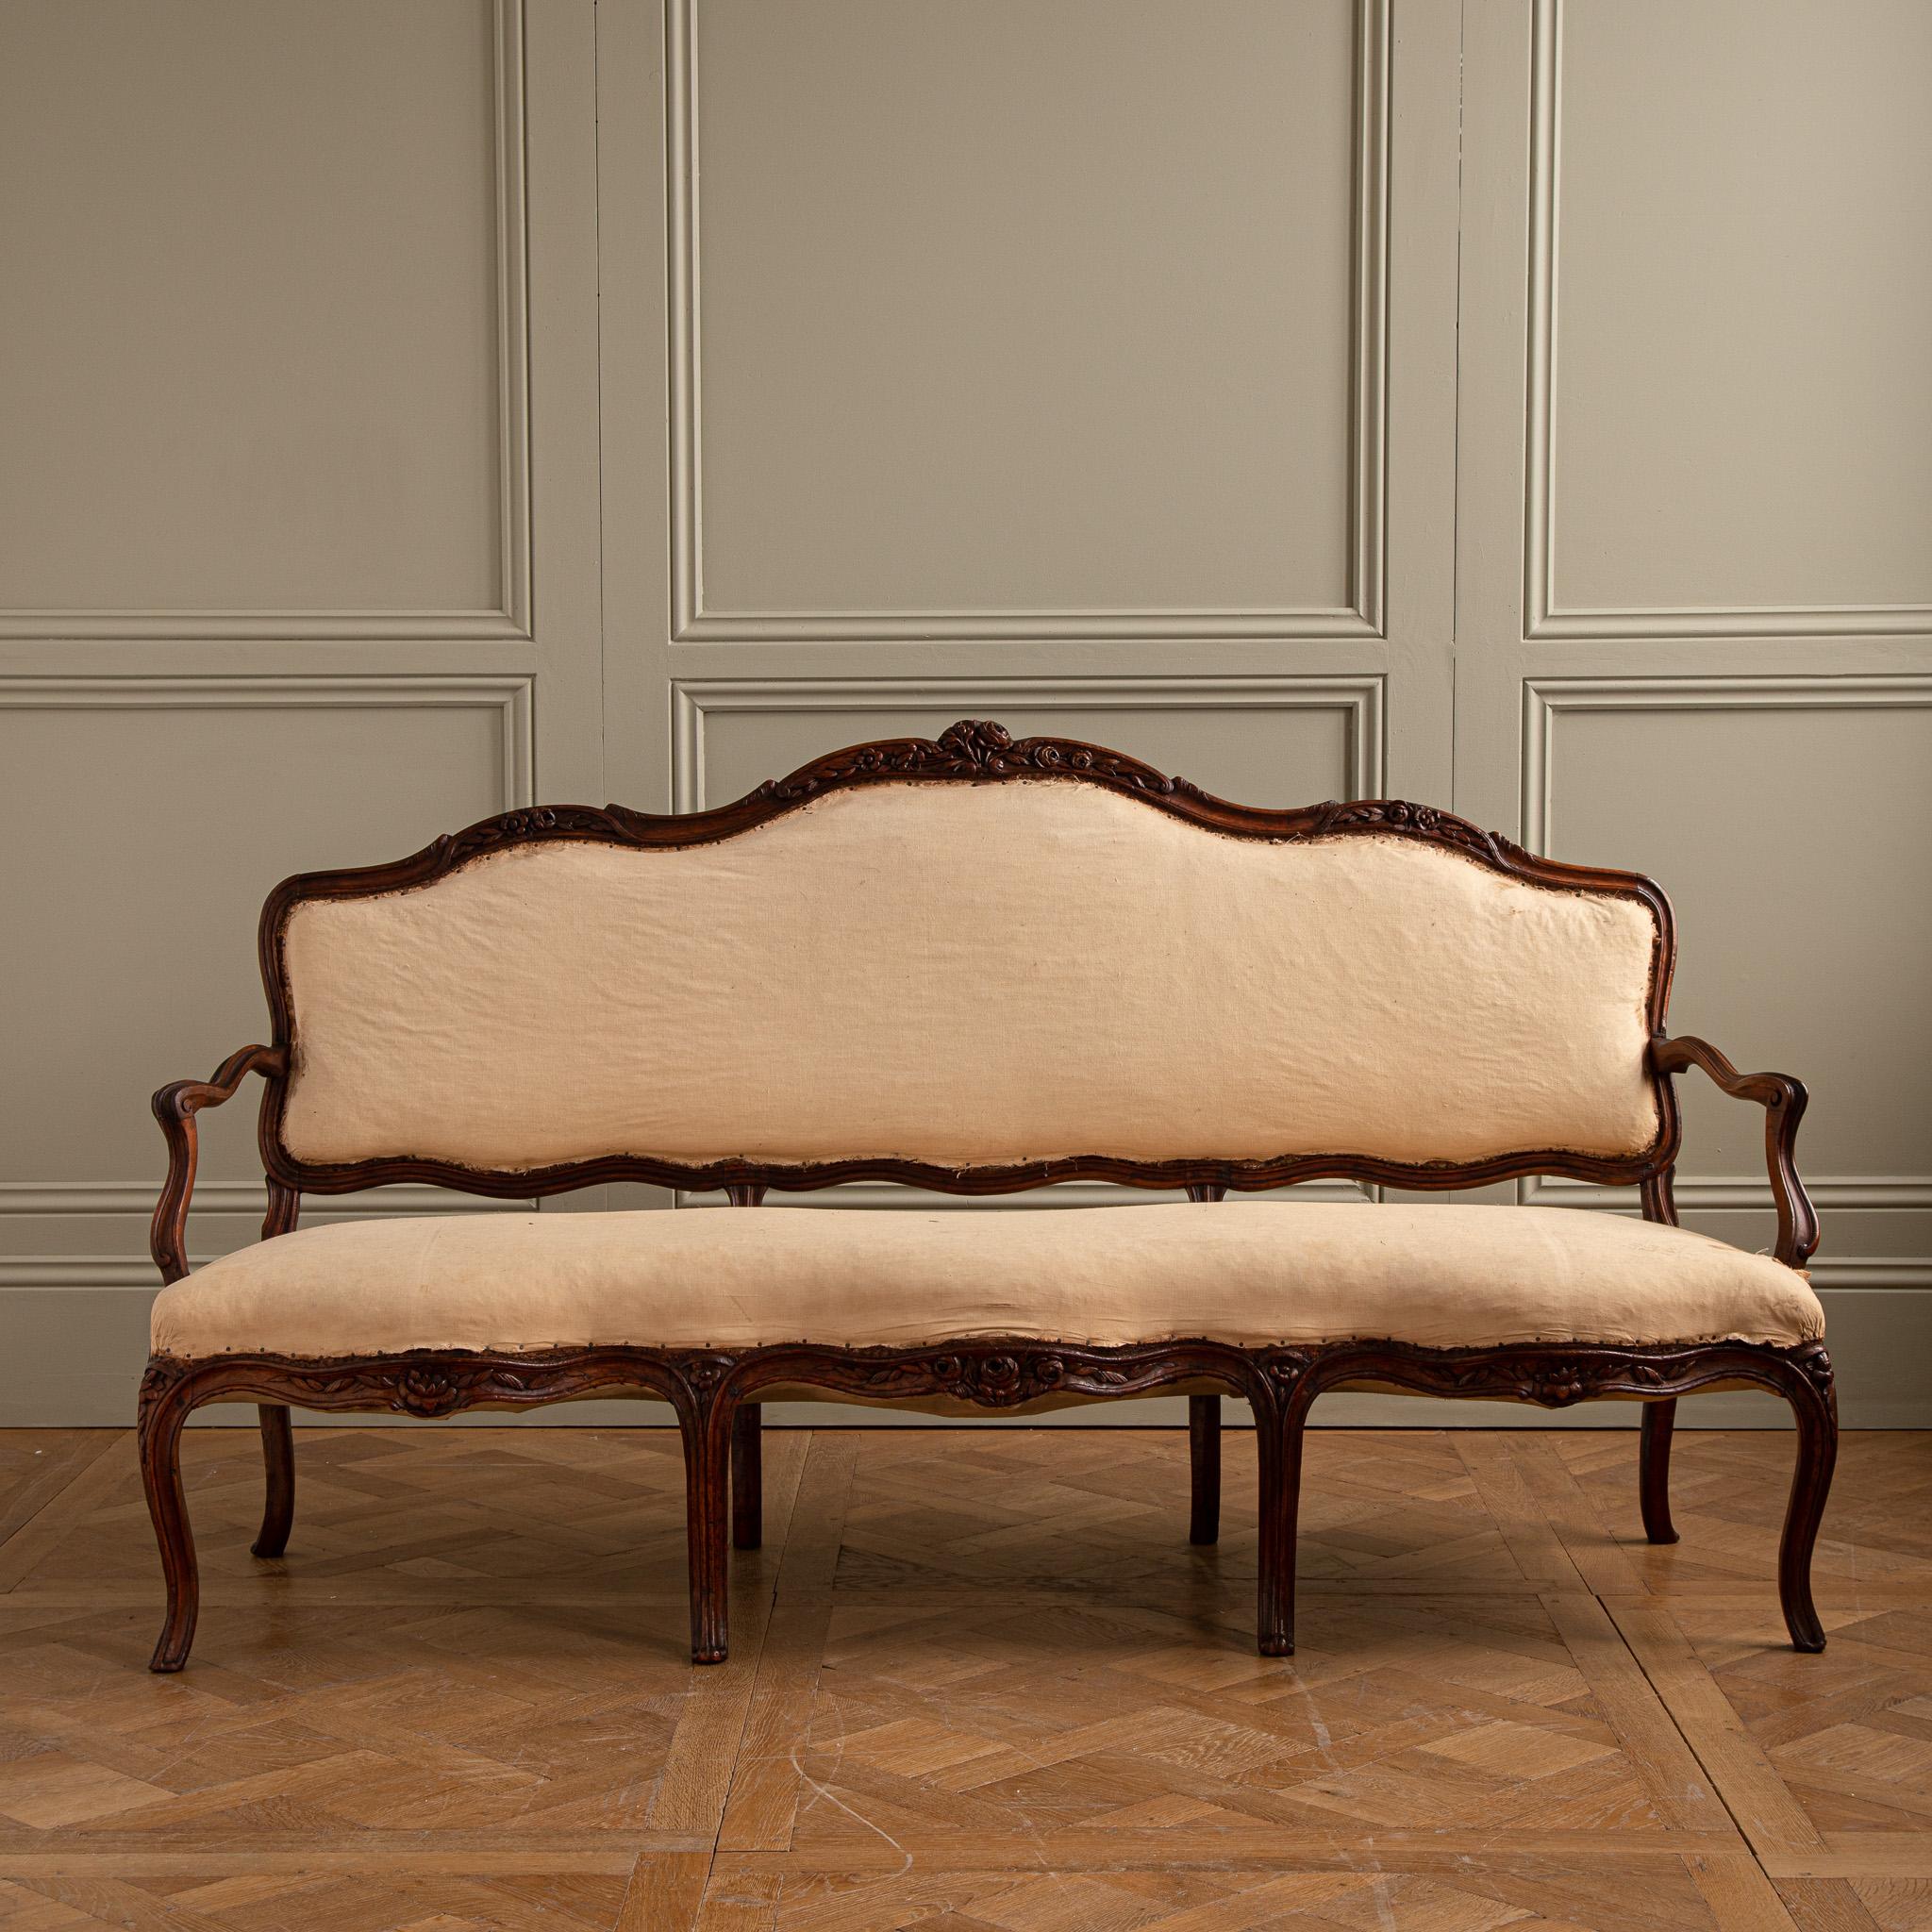 Sofa in Nussbaum, geformte und skulpturale Rückenlehne mit dreifacher Faltung, vertiefte Armlehnen, auf acht gebogenen Serpentinenbeinen ruhend.
aus der Zeit Ludwigs XV.
Auf Wunsch können wir das Sofa neu beziehen.
Wir können Stoffe beschaffen oder